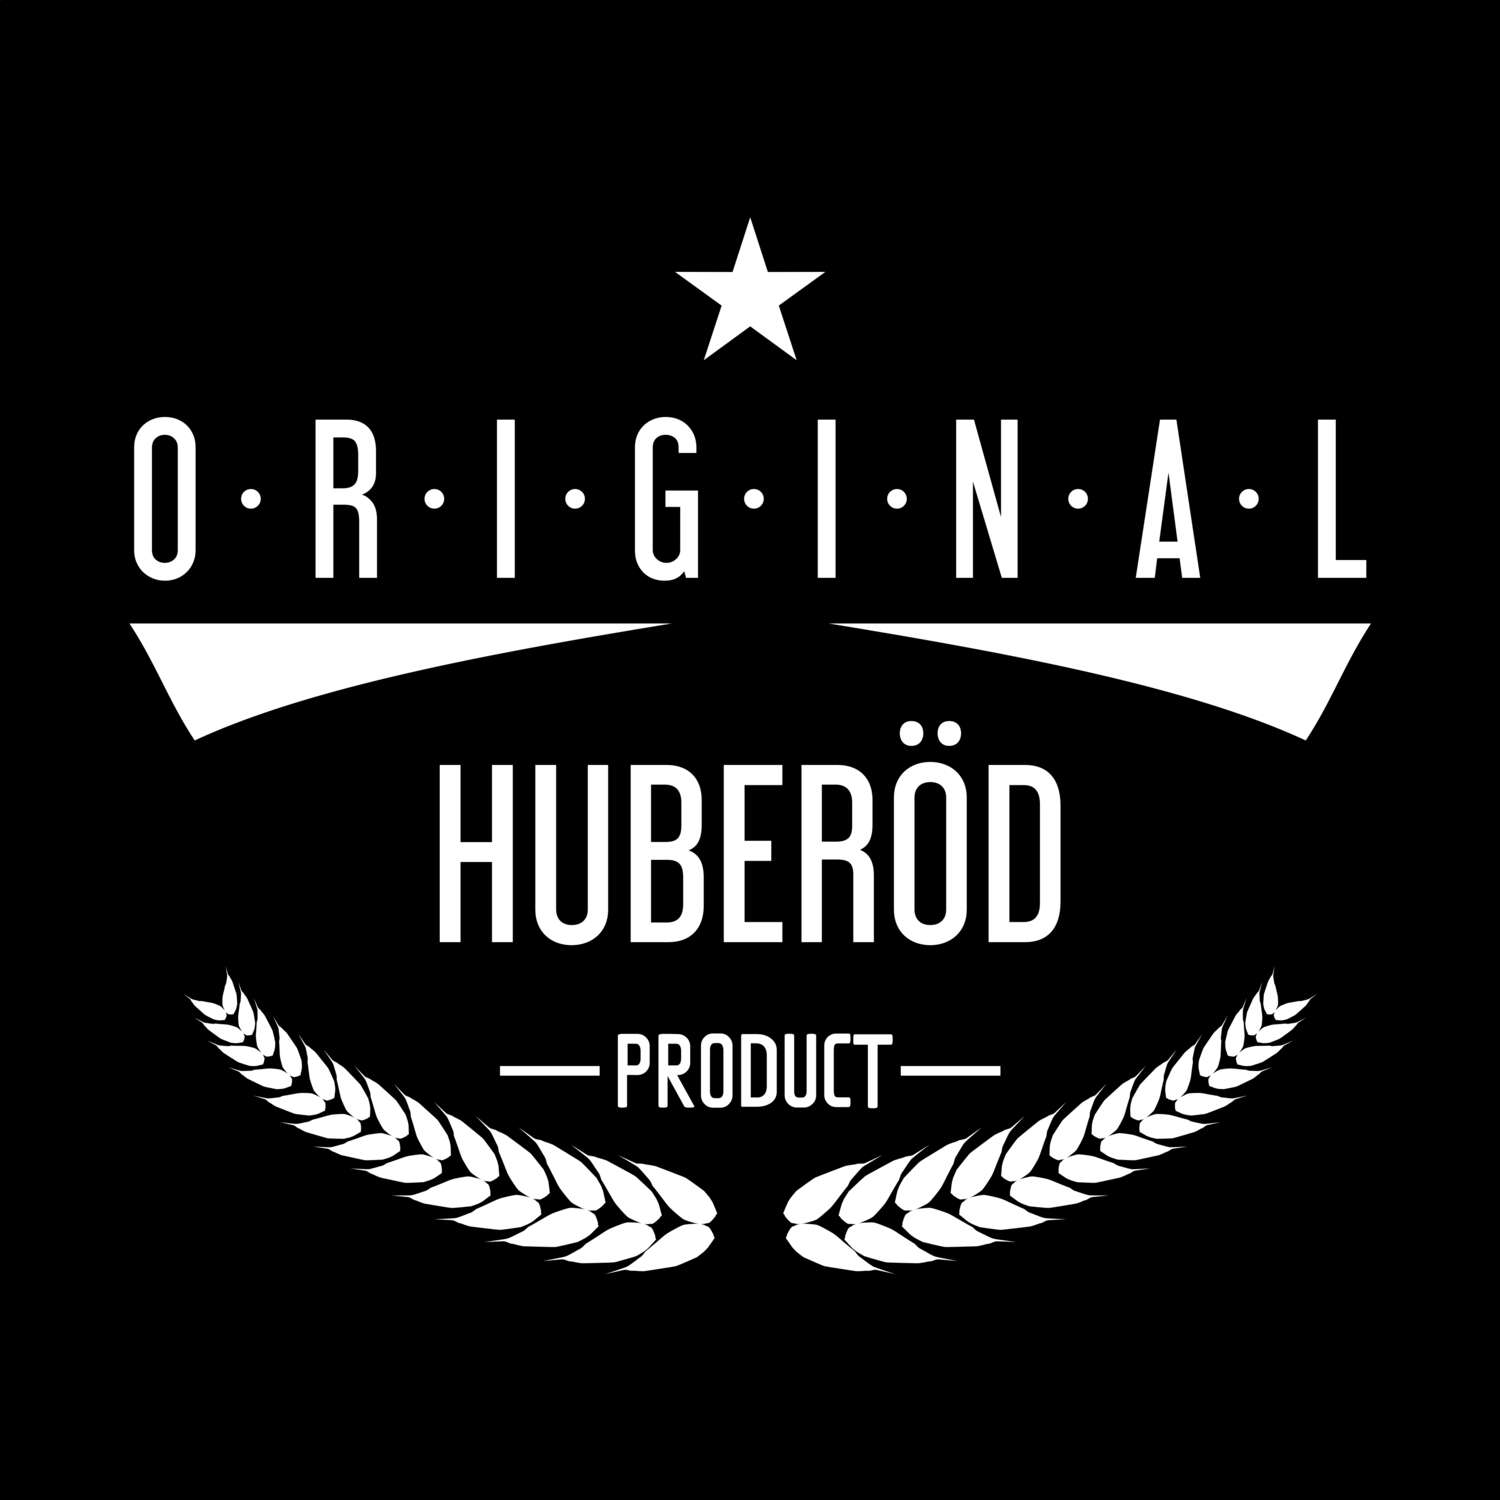 Huberöd T-Shirt »Original Product«